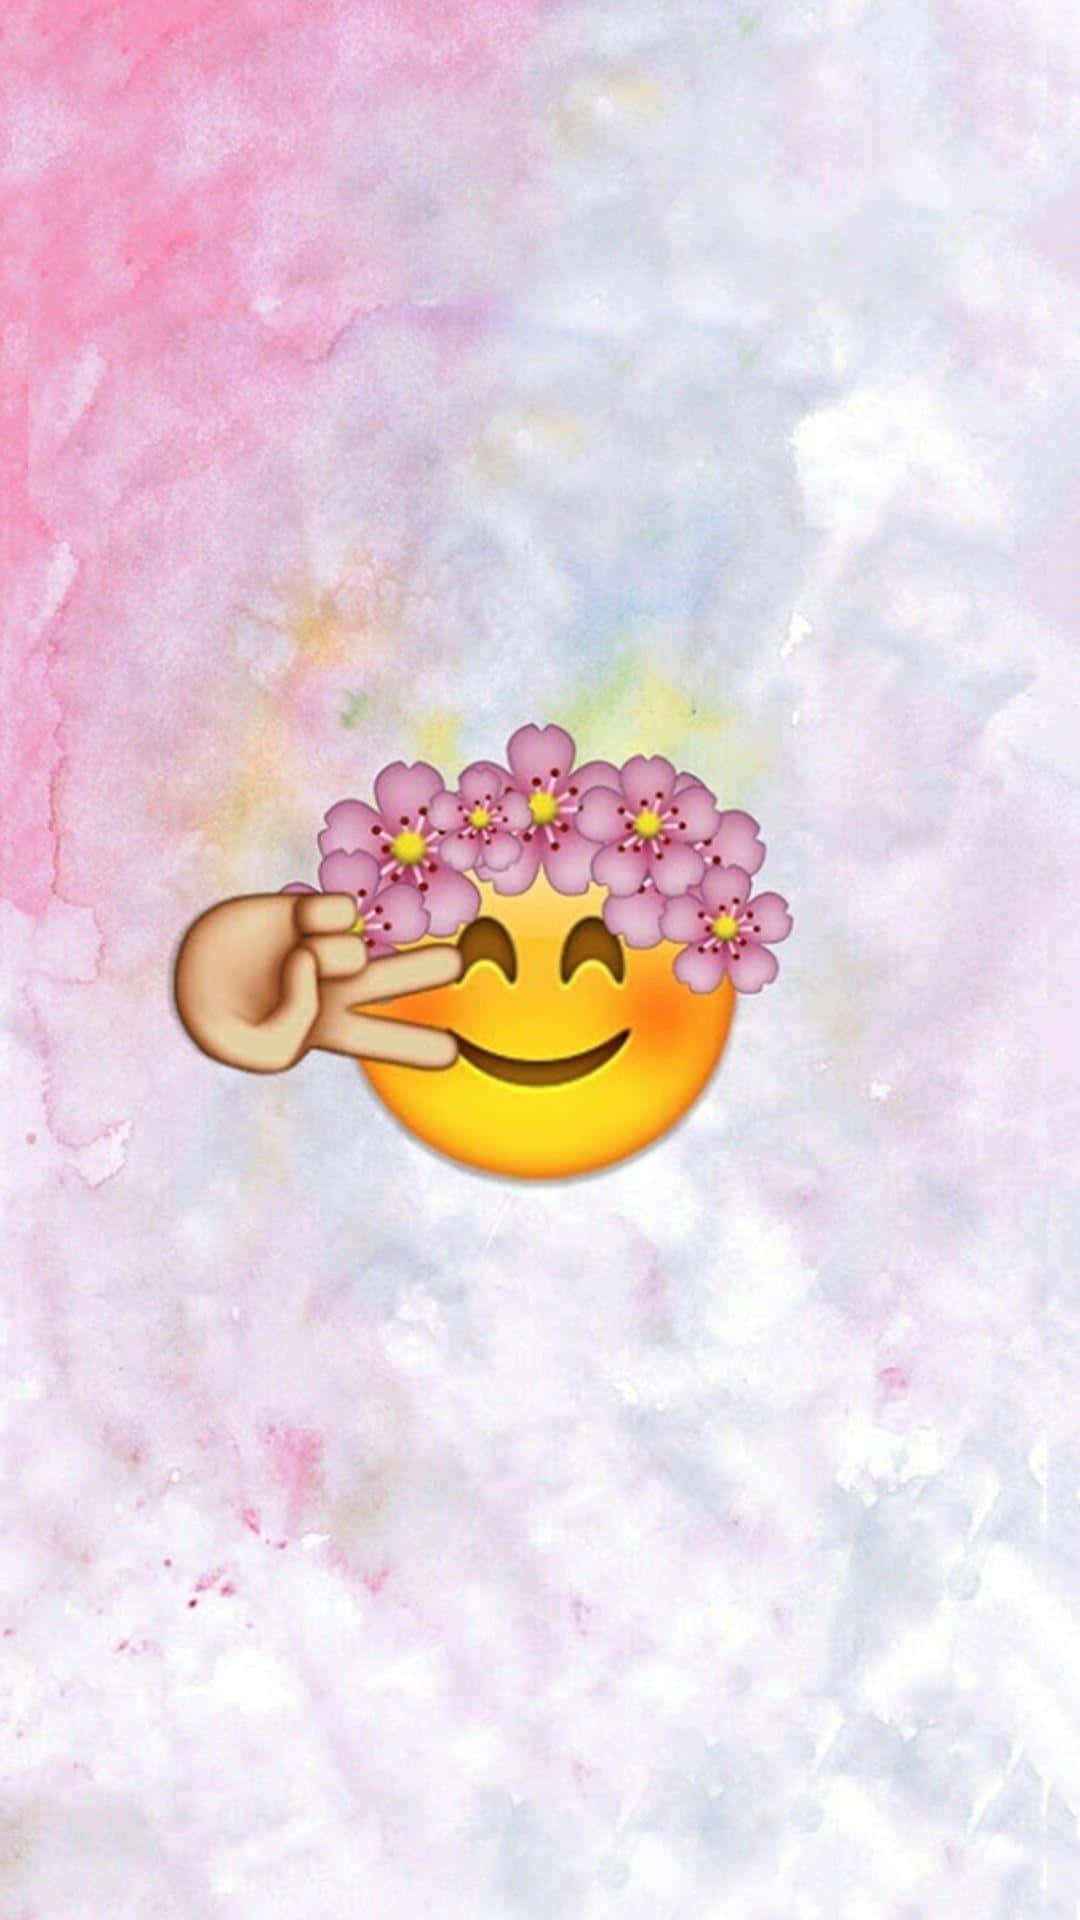 Zeigensie Ihre Niedlichkeit Mit Diesem Entzückenden Emoji! Wallpaper